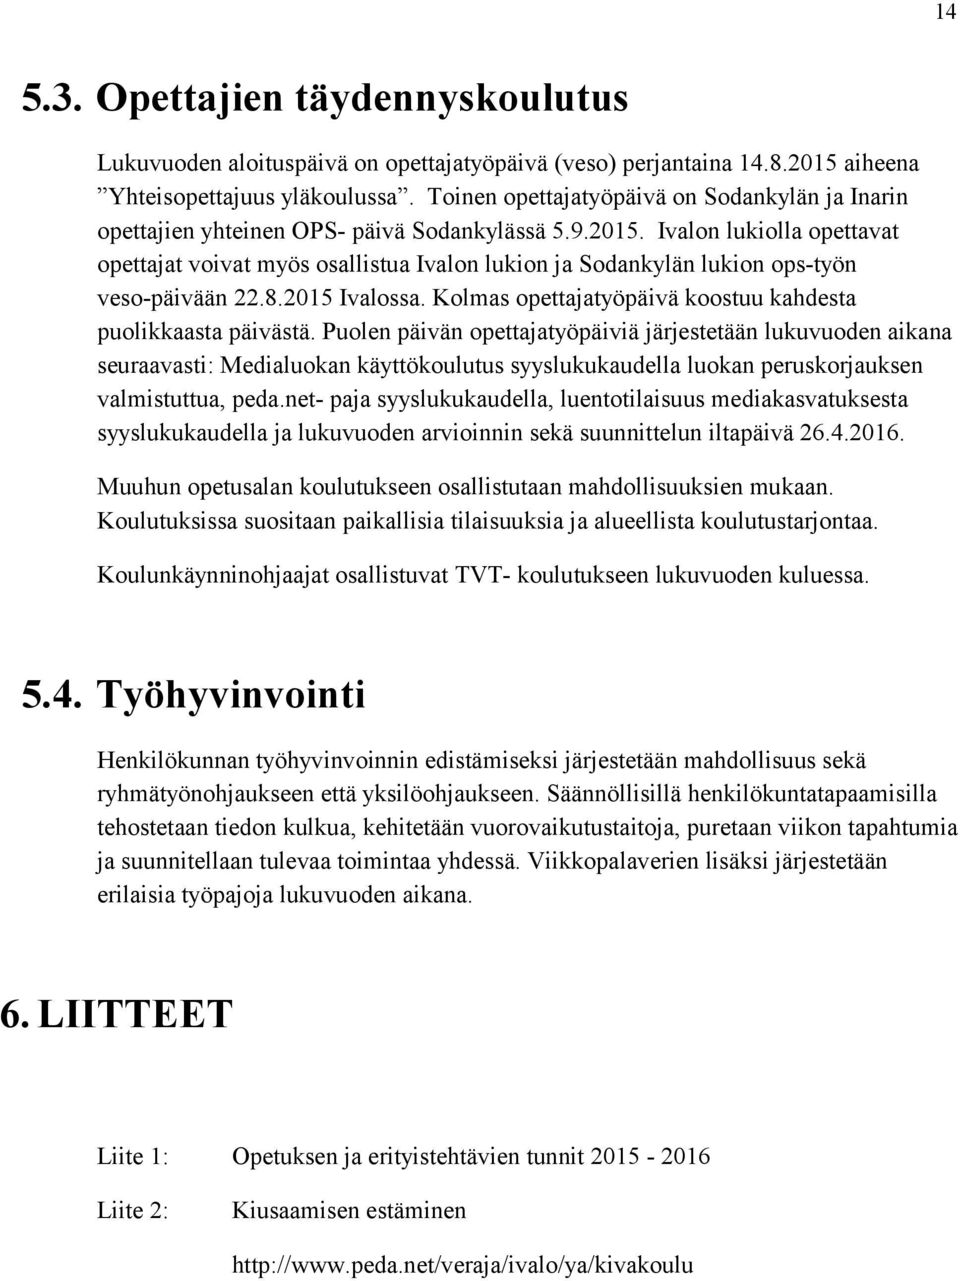 Ivalon lukiolla opettavat opettajat voivat myös osallistua Ivalon lukion ja Sodankylän lukion ops-työn veso-päivään 22.8.2015 Ivalossa. Kolmas opettajatyöpäivä koostuu kahdesta puolikkaasta päivästä.